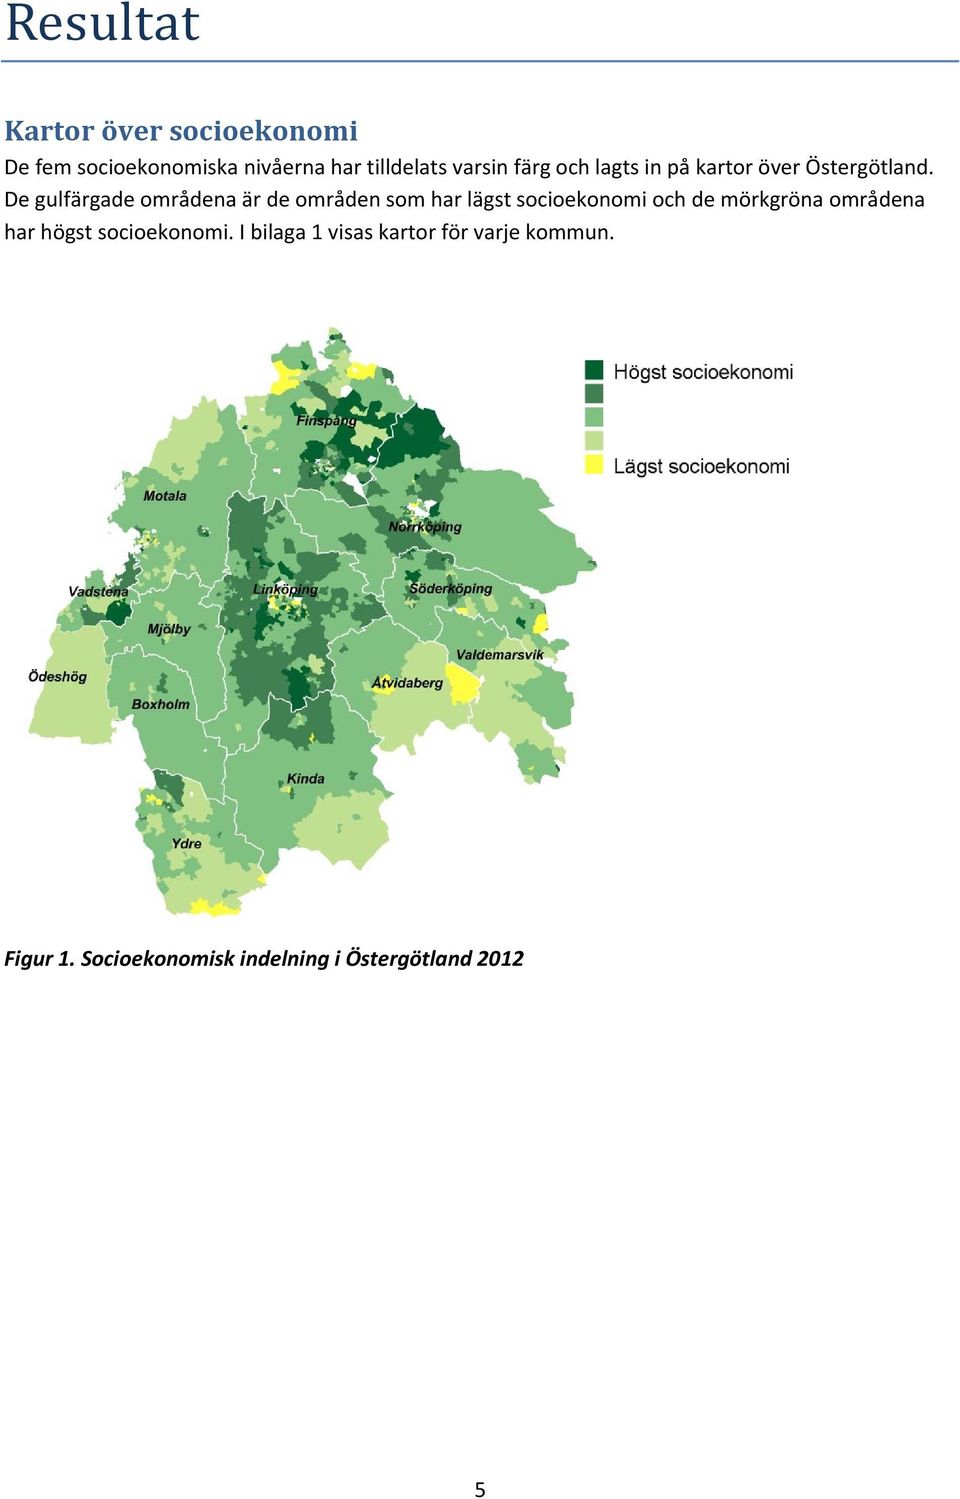 De gulfärgade områdena är de områden som har lägst socioekonomi och de mörkgröna